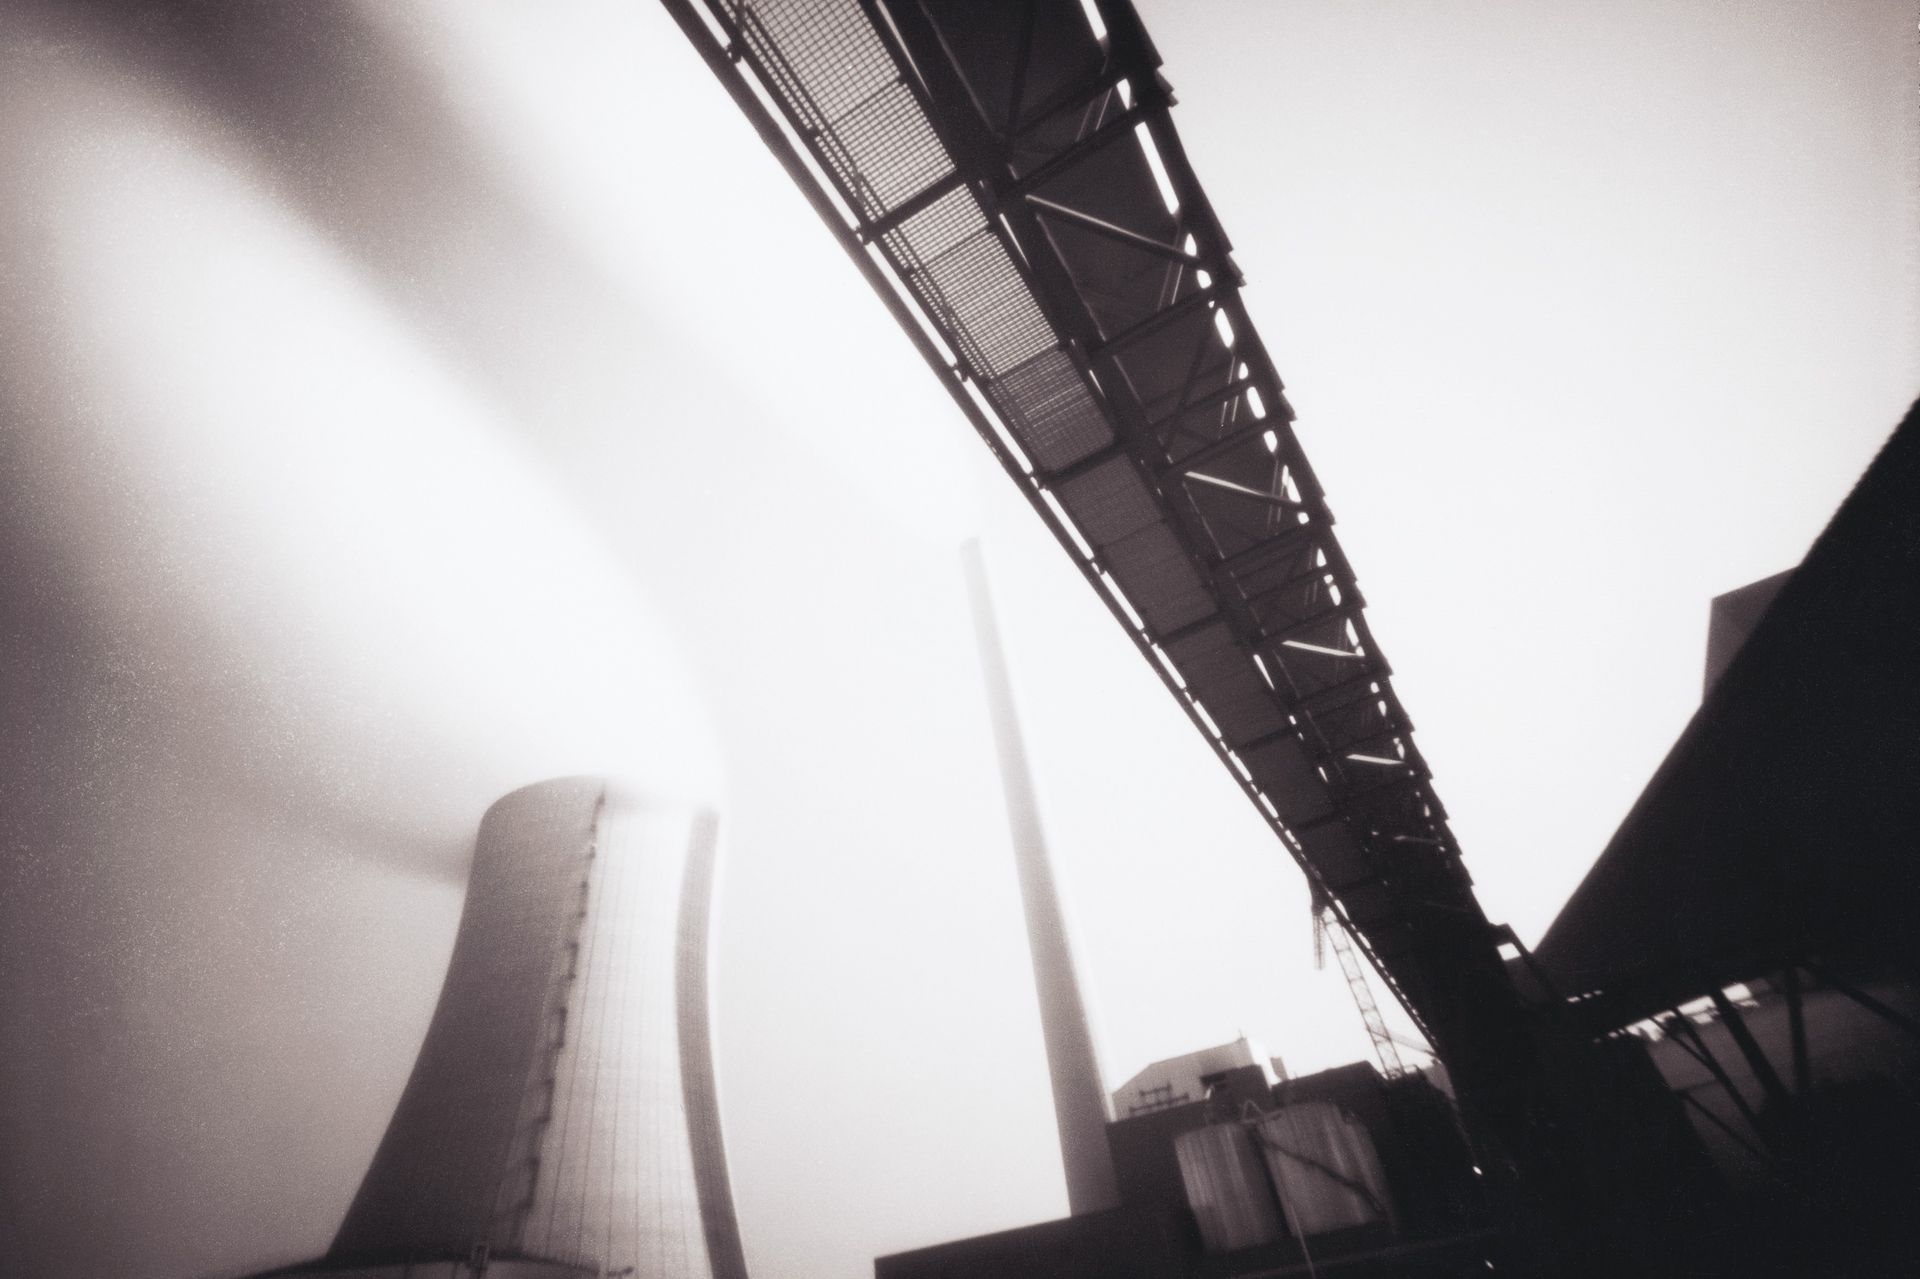 Das Bild zeigt eine Fotografie eines Kohlekraftwerkes, aufgenommen von Peter Hamel mit einer Camera Obscura (Lochkamera) auf Positiv/Negativ Sofortbildfilm 9 x 12.